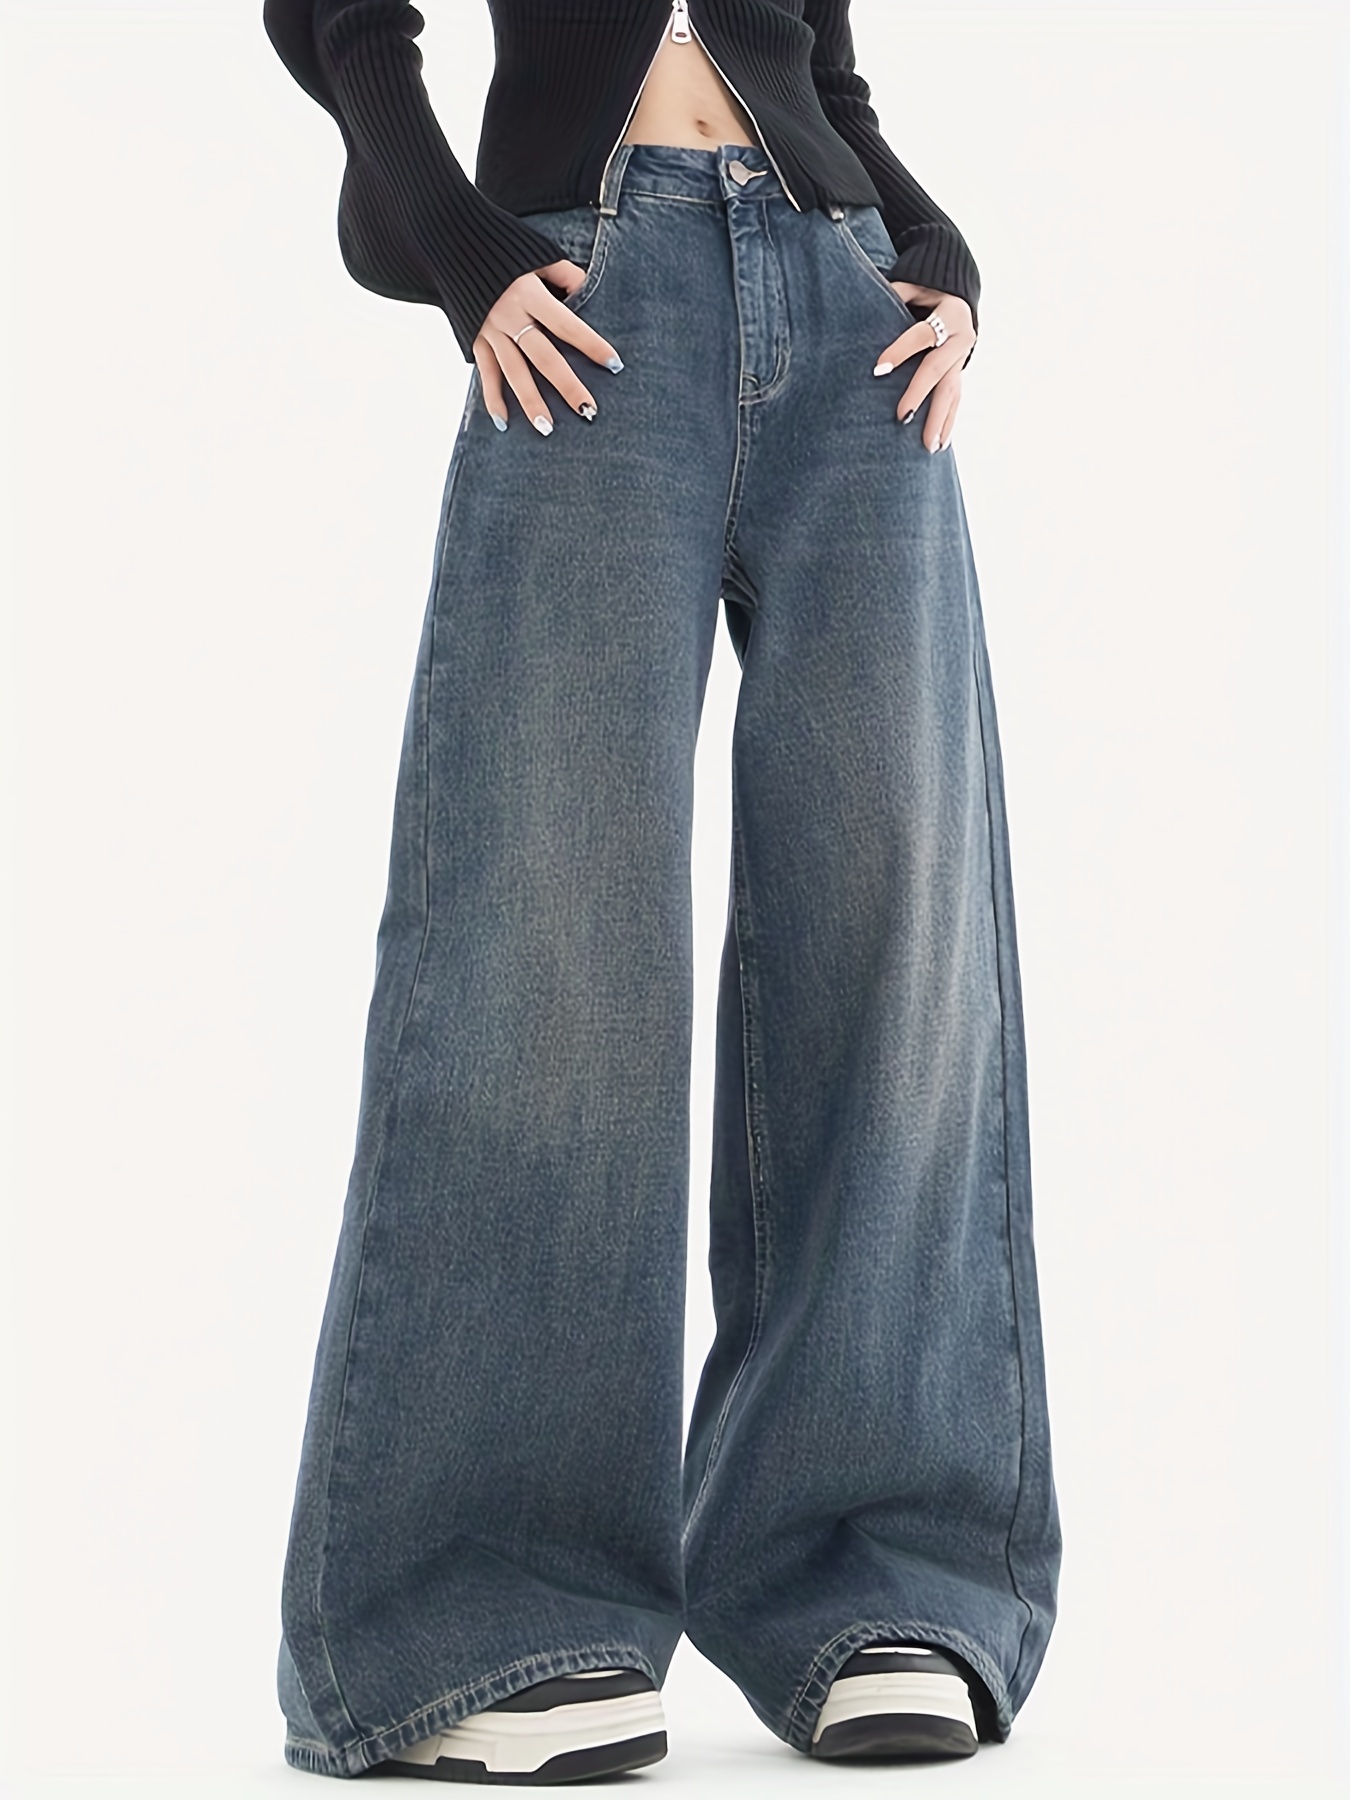 Jeans mom azul claro de cintura alta, pantalones de mezclilla recortados  holgados de tiro alto, jeans y ropa de mezclilla para mujer